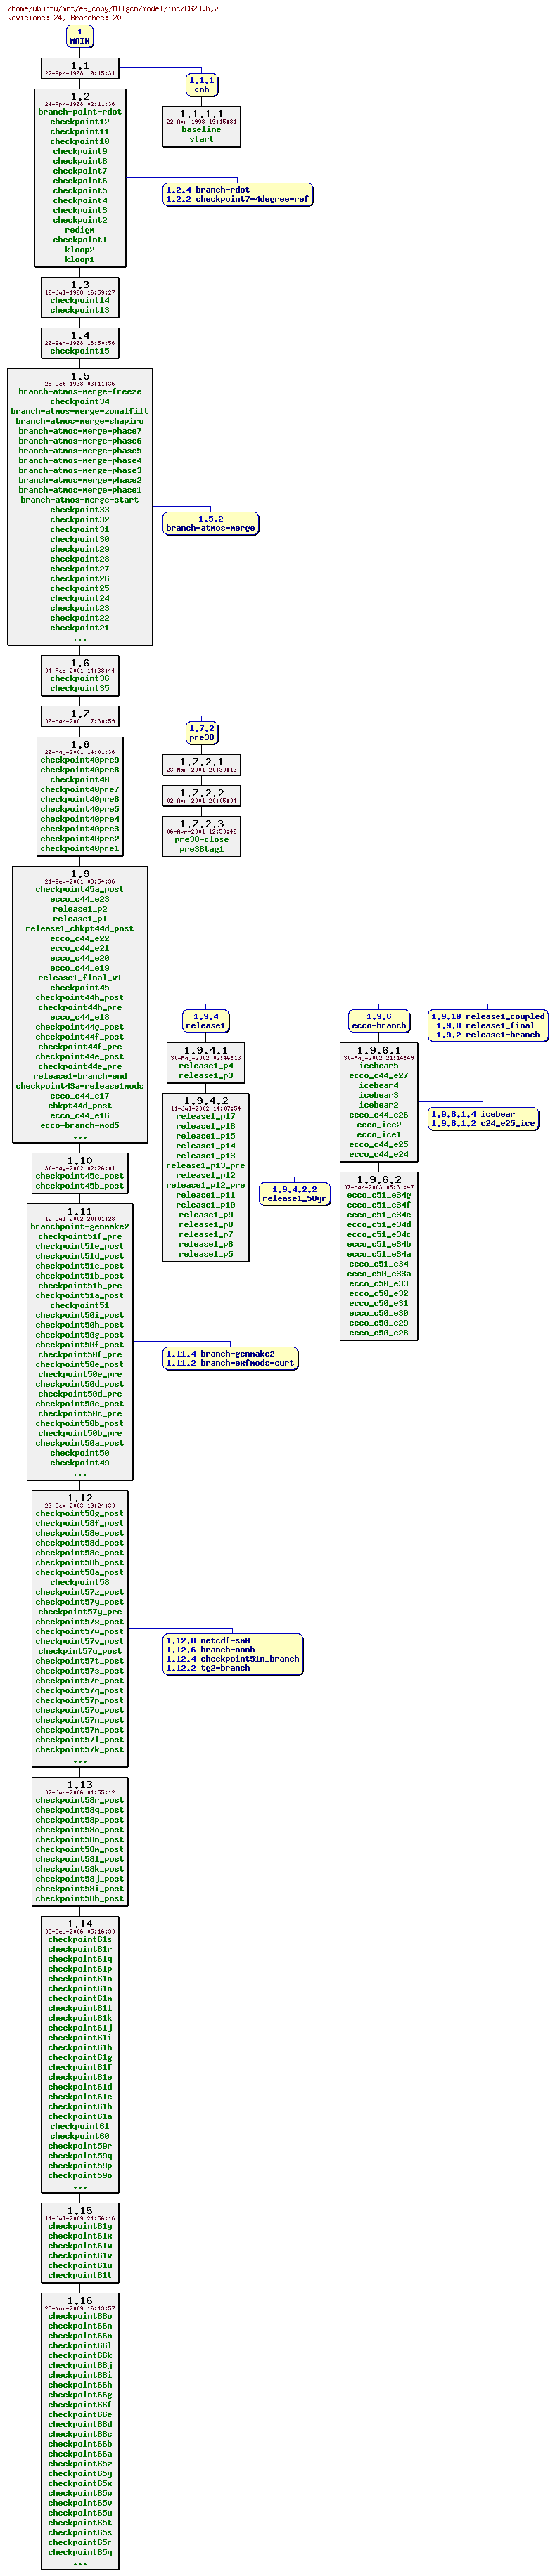 Revisions of MITgcm/model/inc/CG2D.h